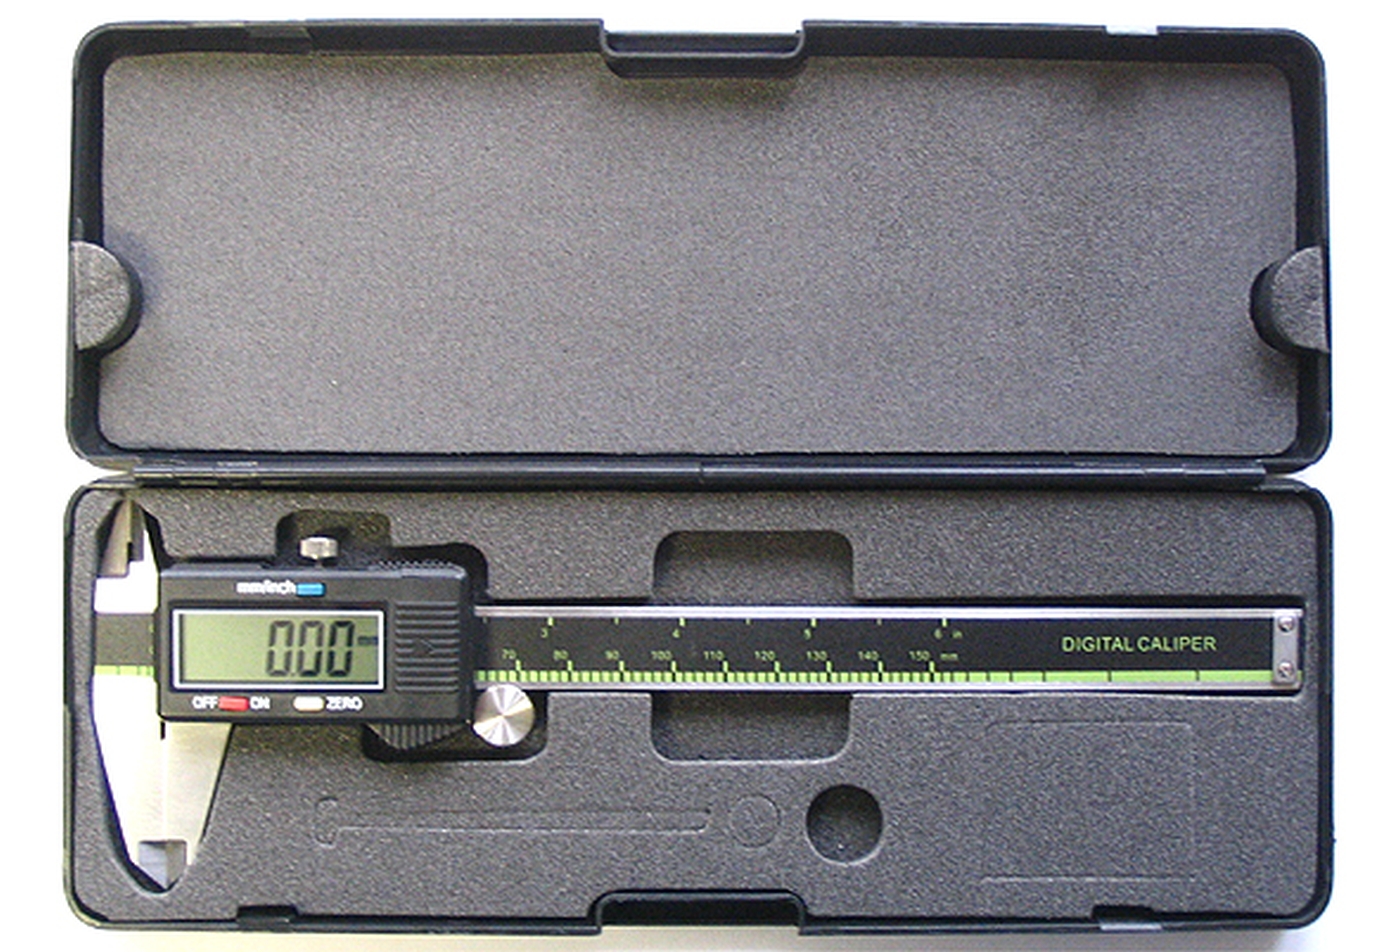 Digitaler Messschieber 0 - 150 mm - gebrauchte und neu